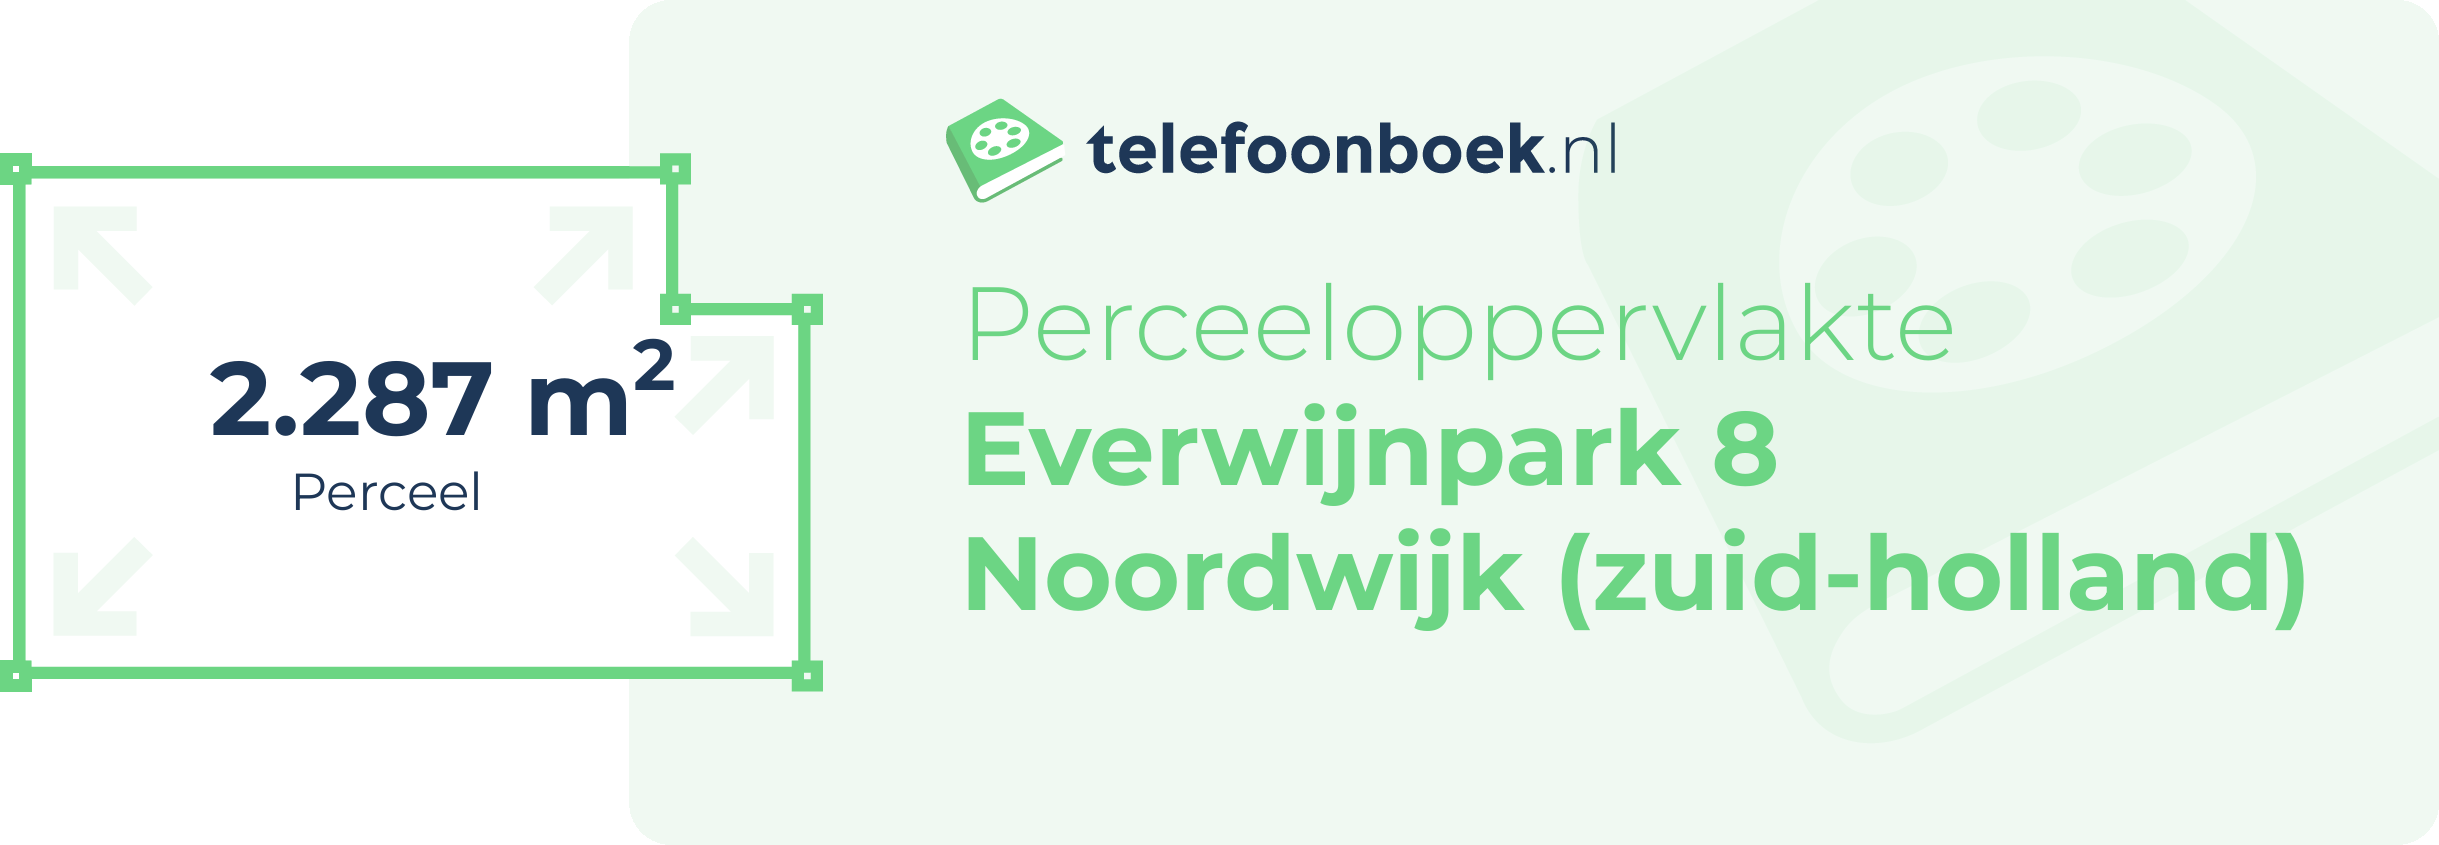 Perceeloppervlakte Everwijnpark 8 Noordwijk (Zuid-Holland)